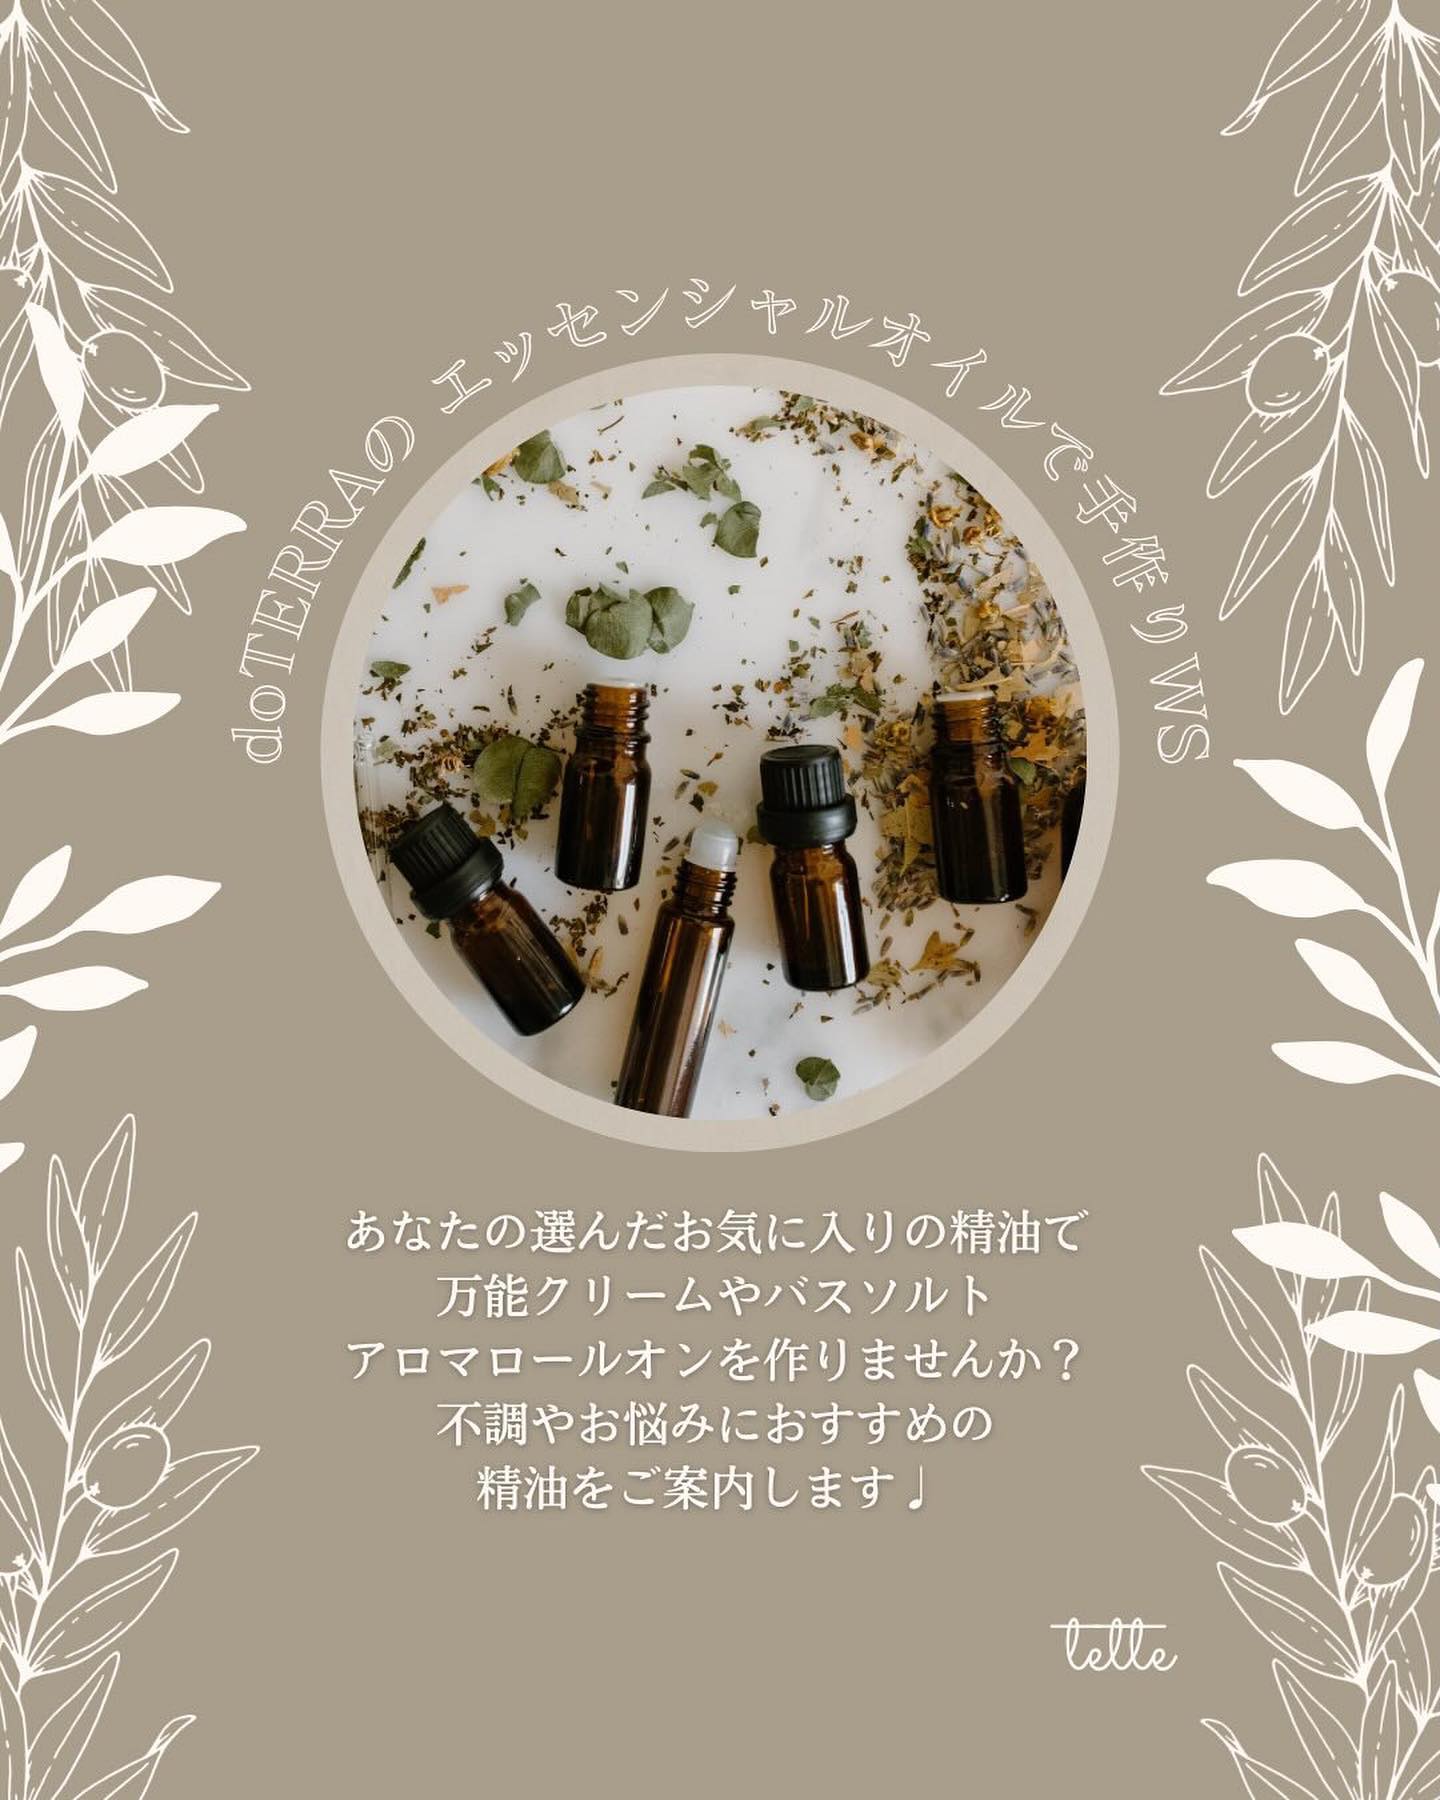 3/5お花見マルシェ出店者さんtetteエッセンシャルオイルを使ったクラフトと刺繍小物・ミモザの販売doTERRA社のメディカルグレードのエッセンシャルオイルを使った手作りコスメのワークショップと@s.c_tette さんの刺繍小物、@yukiko_jsdfmania さんのミモザの切花を販売をします◡̈♡@nana0812